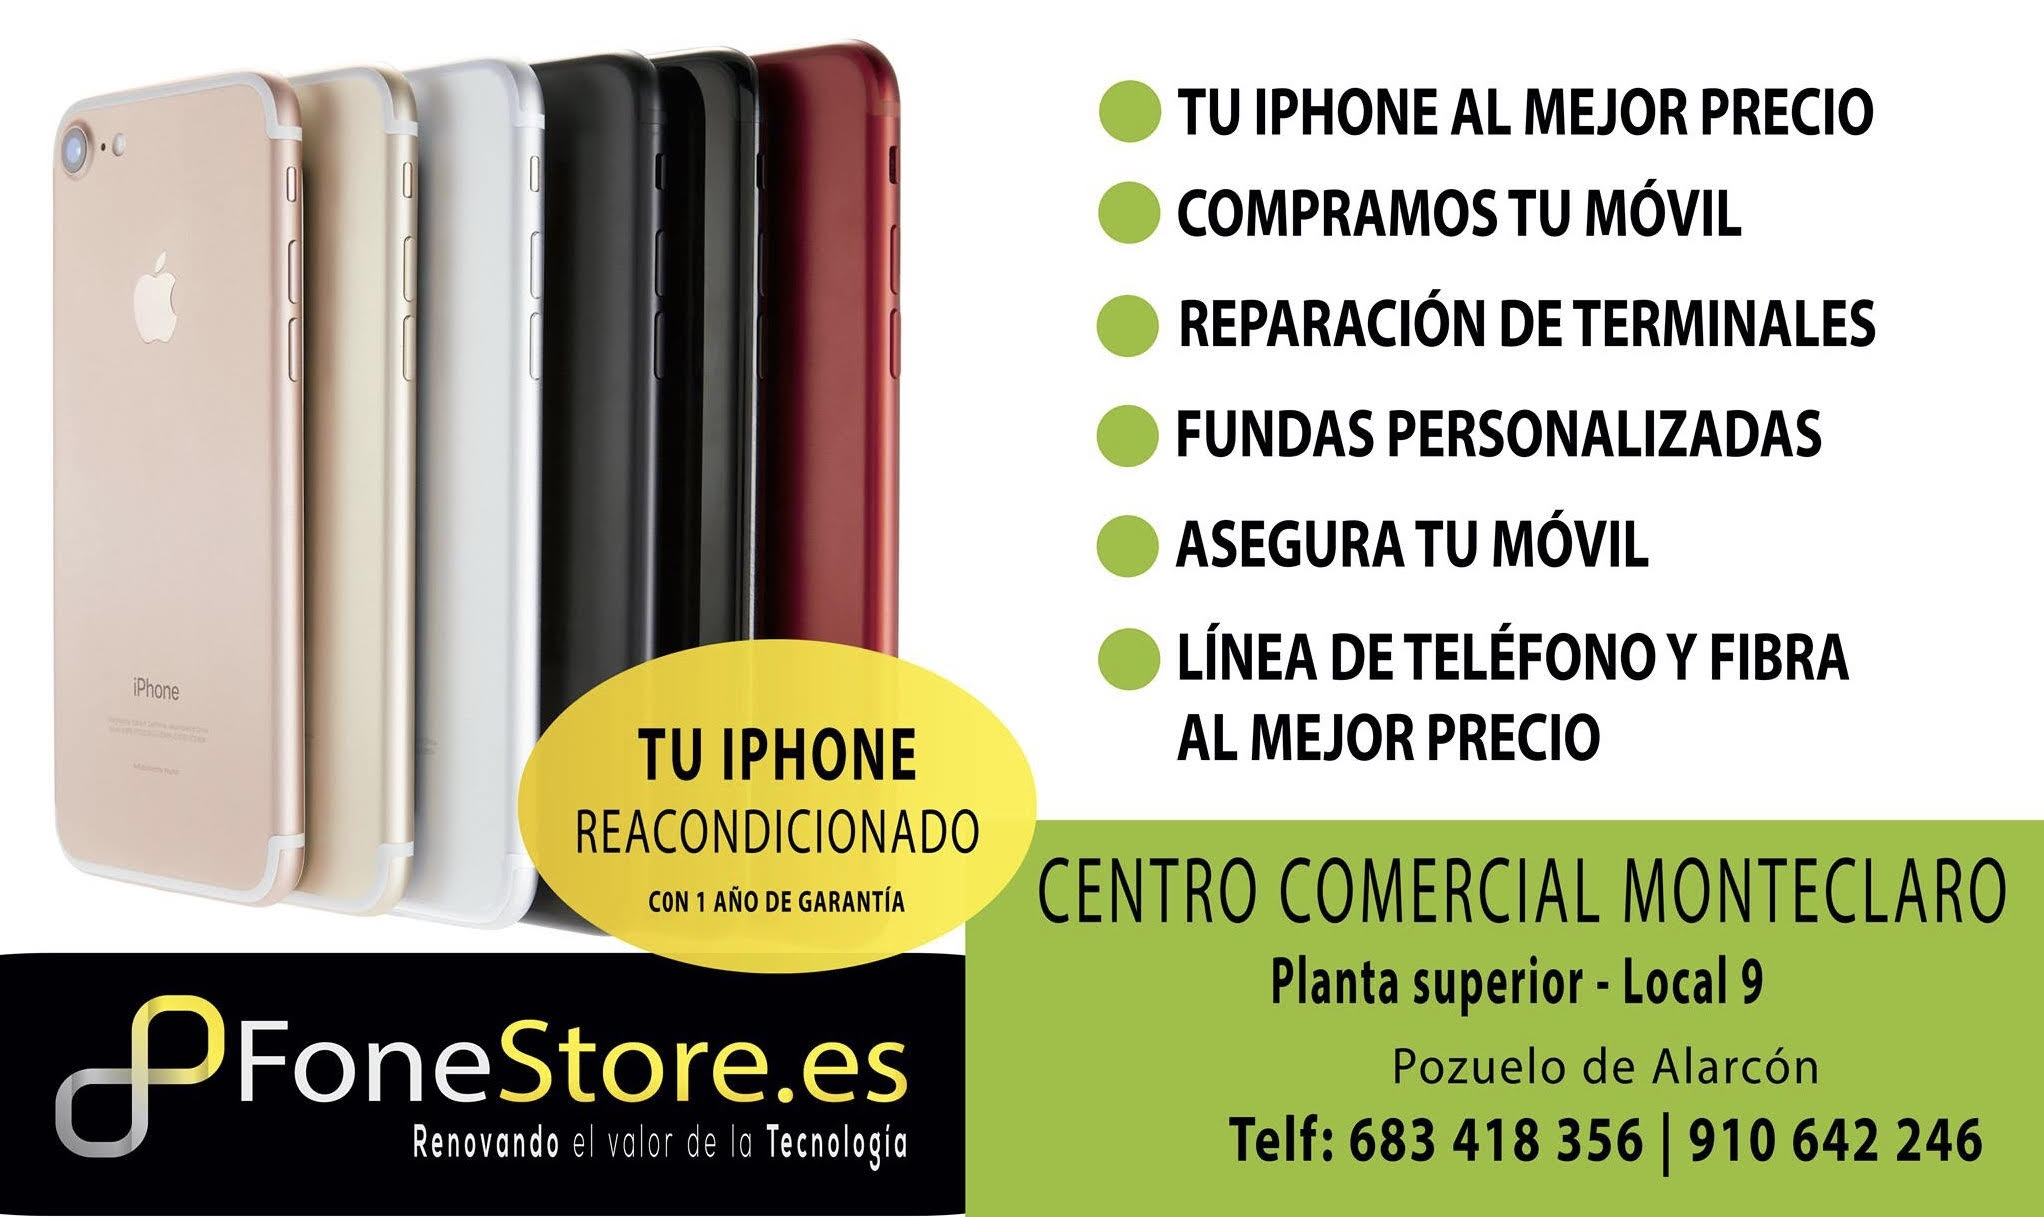 Móviles reacondicionados - FoneStore - iPhone reacondicionado